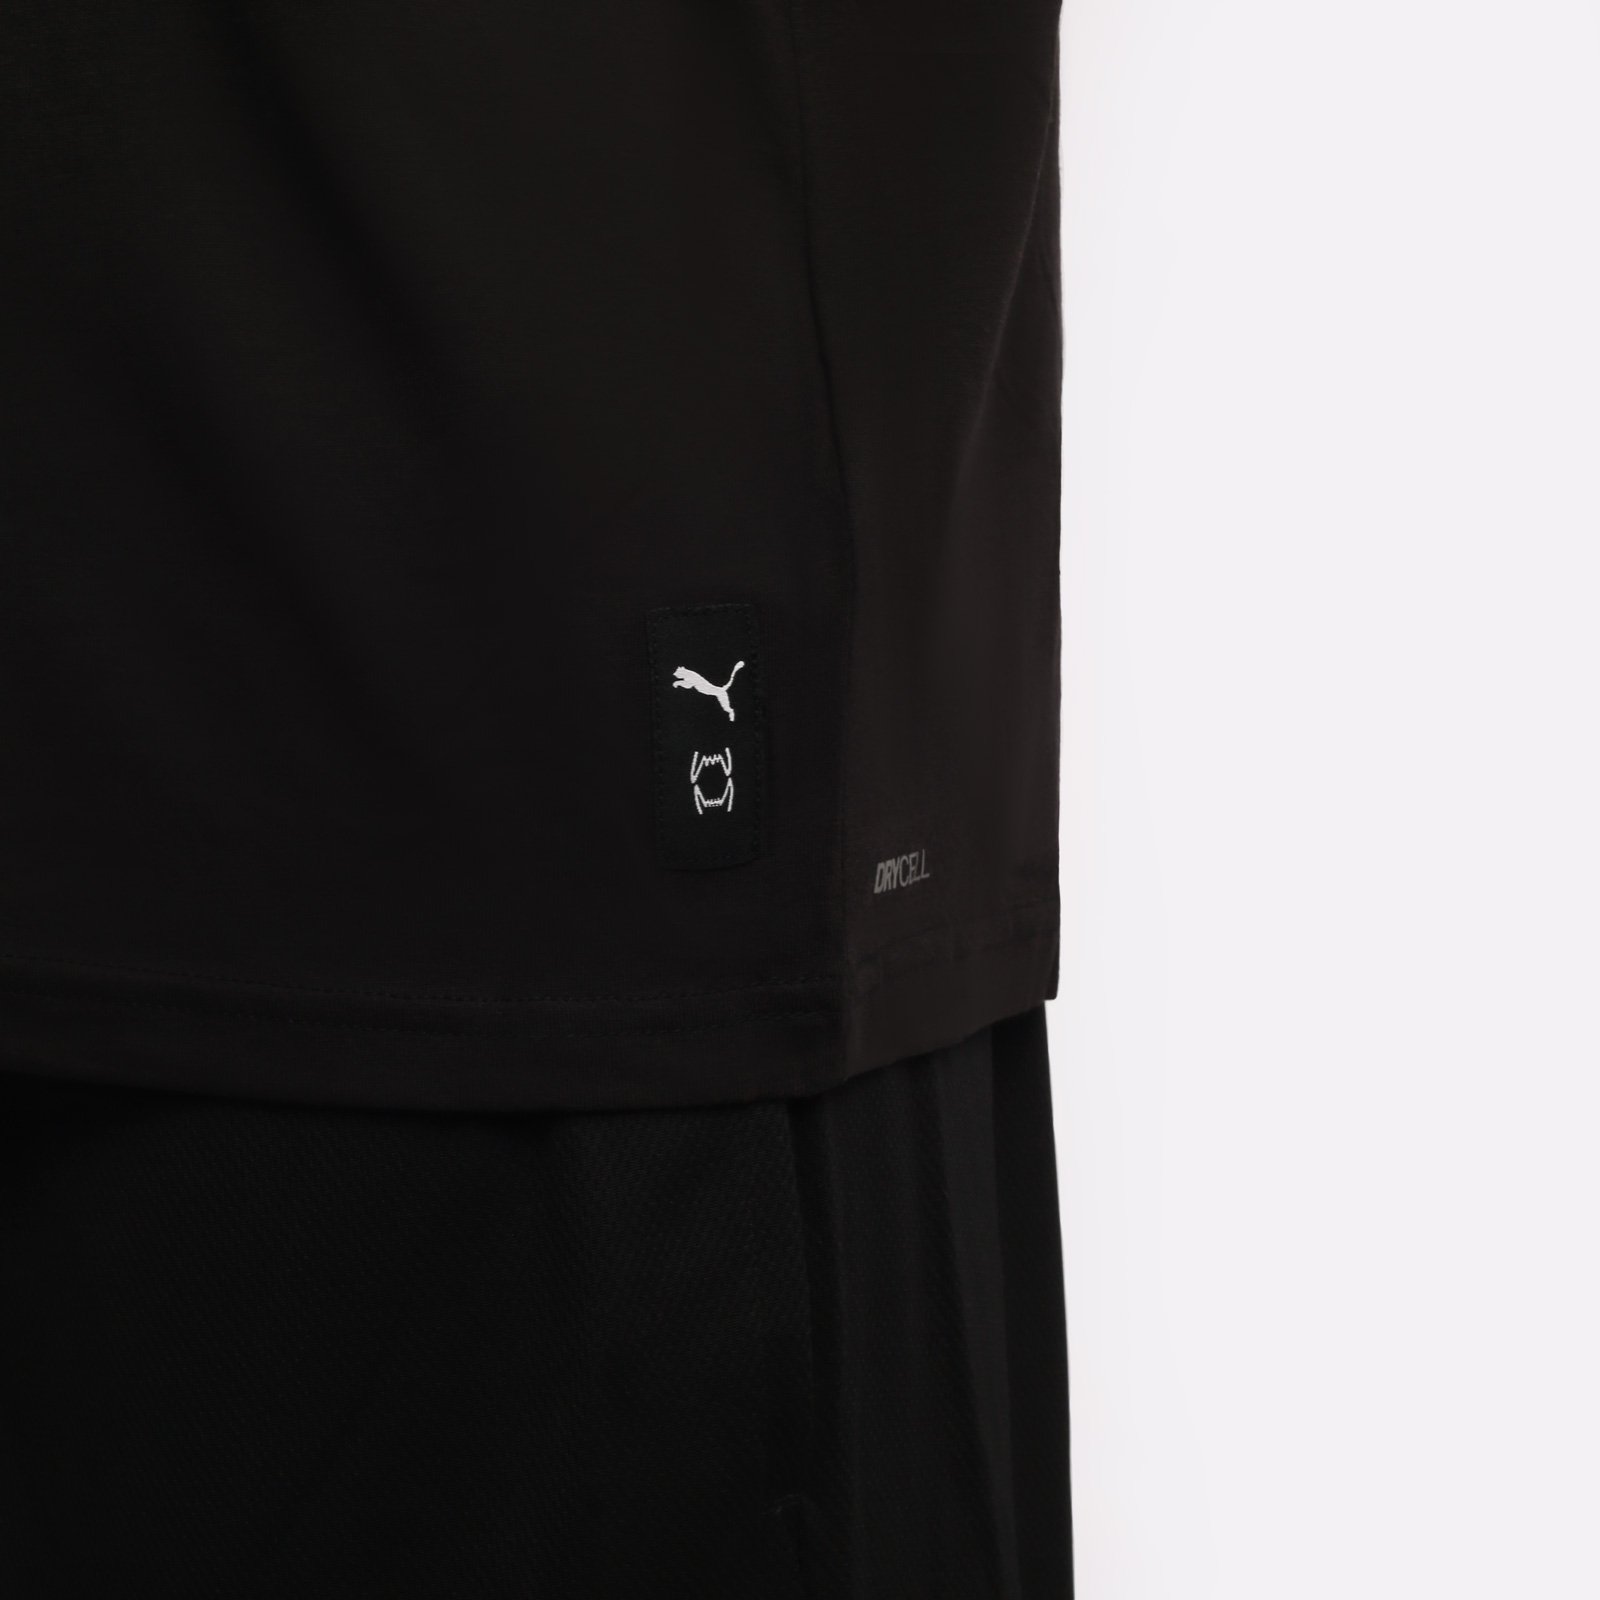 мужская футболка PUMA Perimeter Tee 1  (53857301)  - цена, описание, фото 3